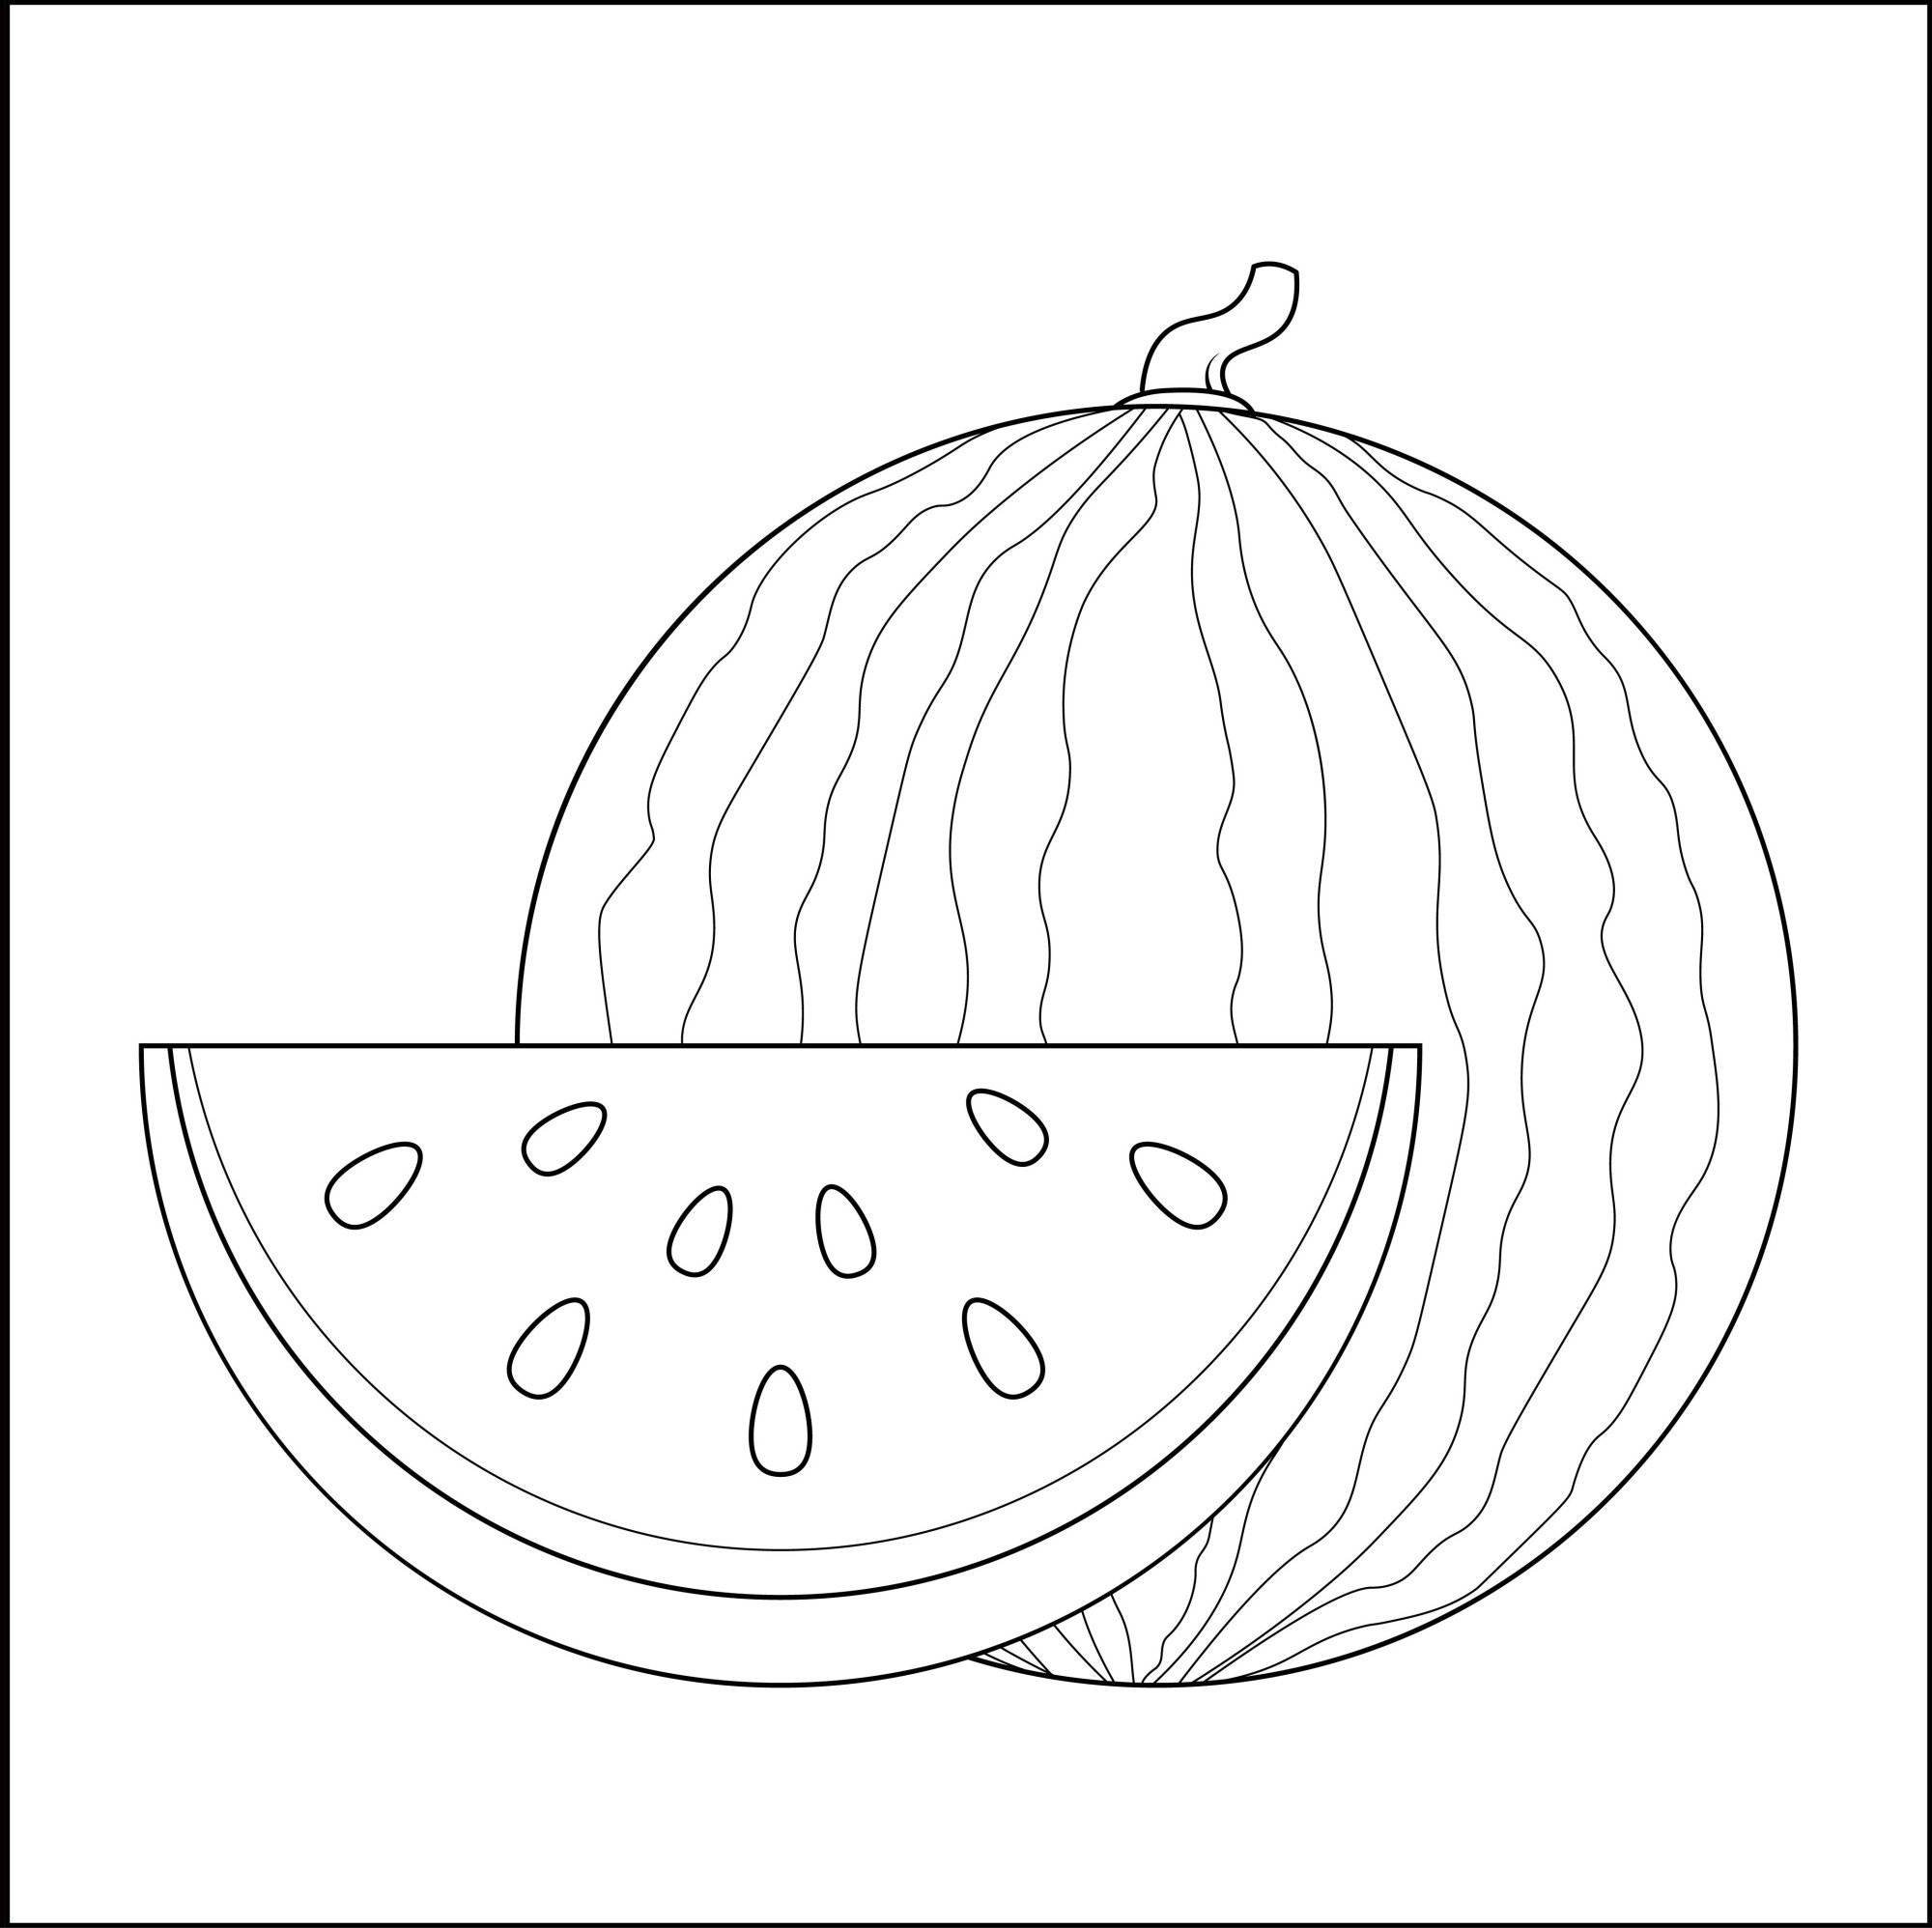 Раскраска для детей: круглый спелый арбуз с долькой